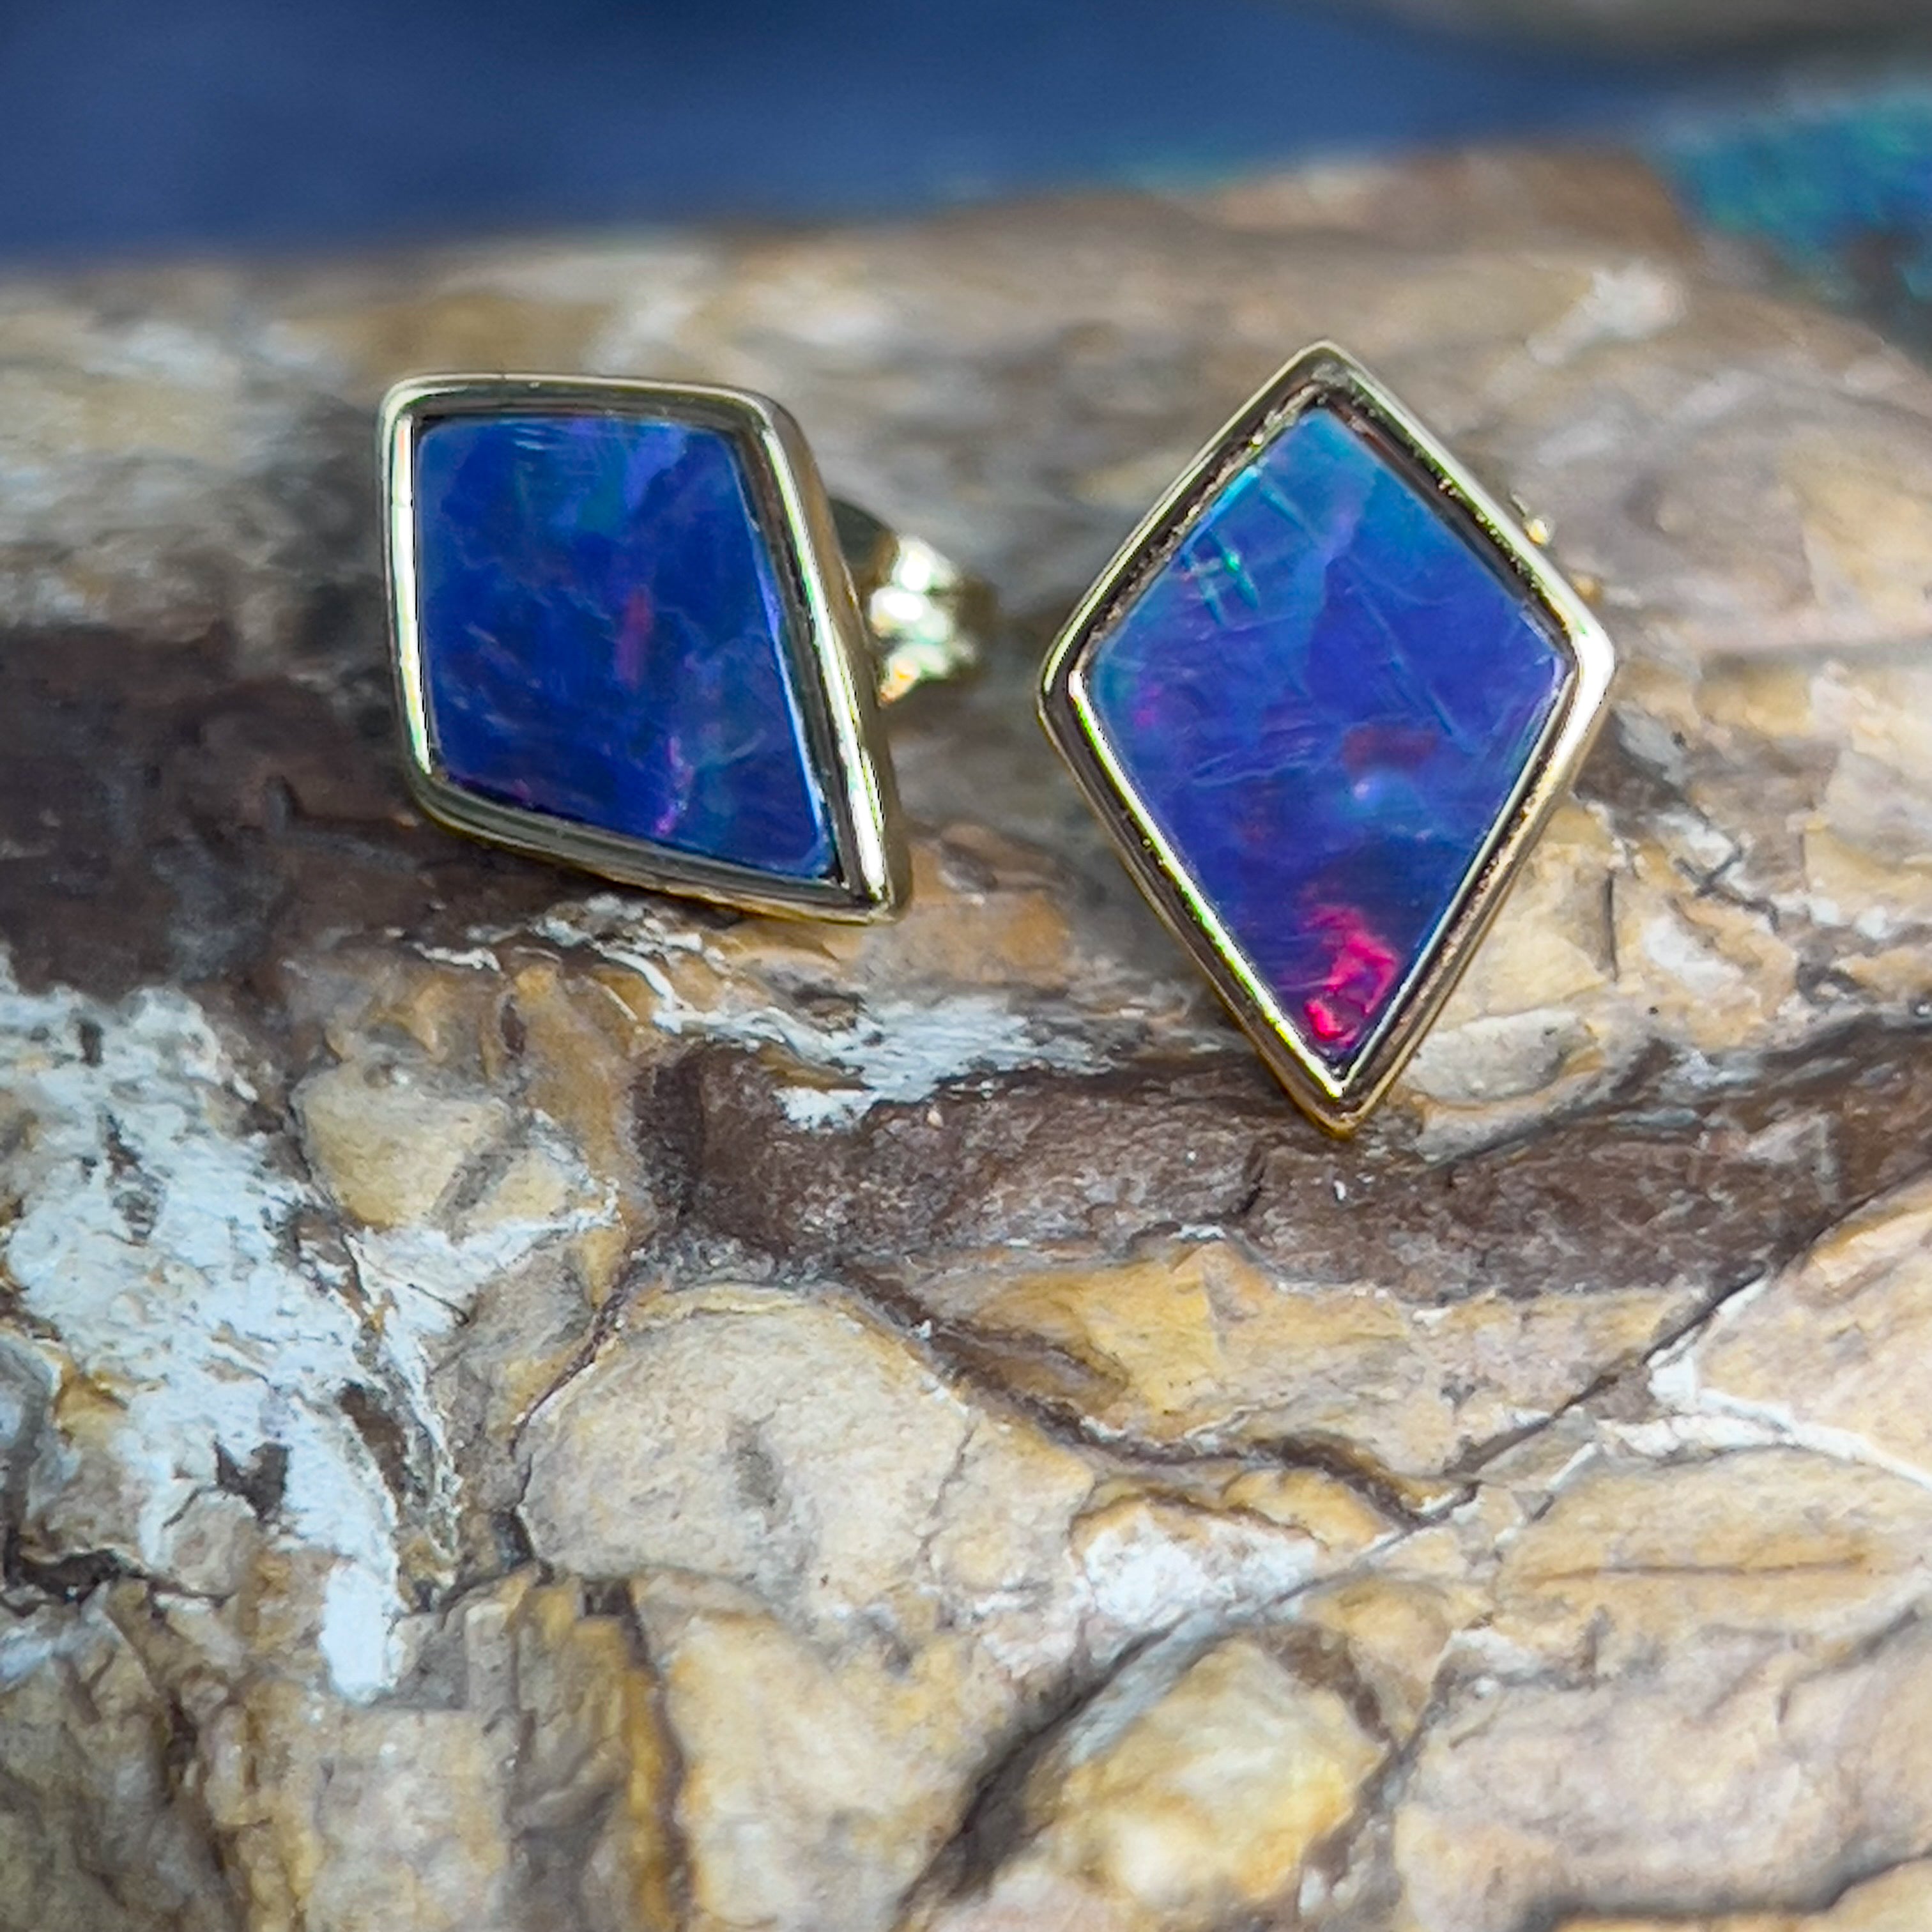 Gold plated silver diamond shape Opal doublet earring studs - Masterpiece Jewellery Opal & Gems Sydney Australia | Online Shop